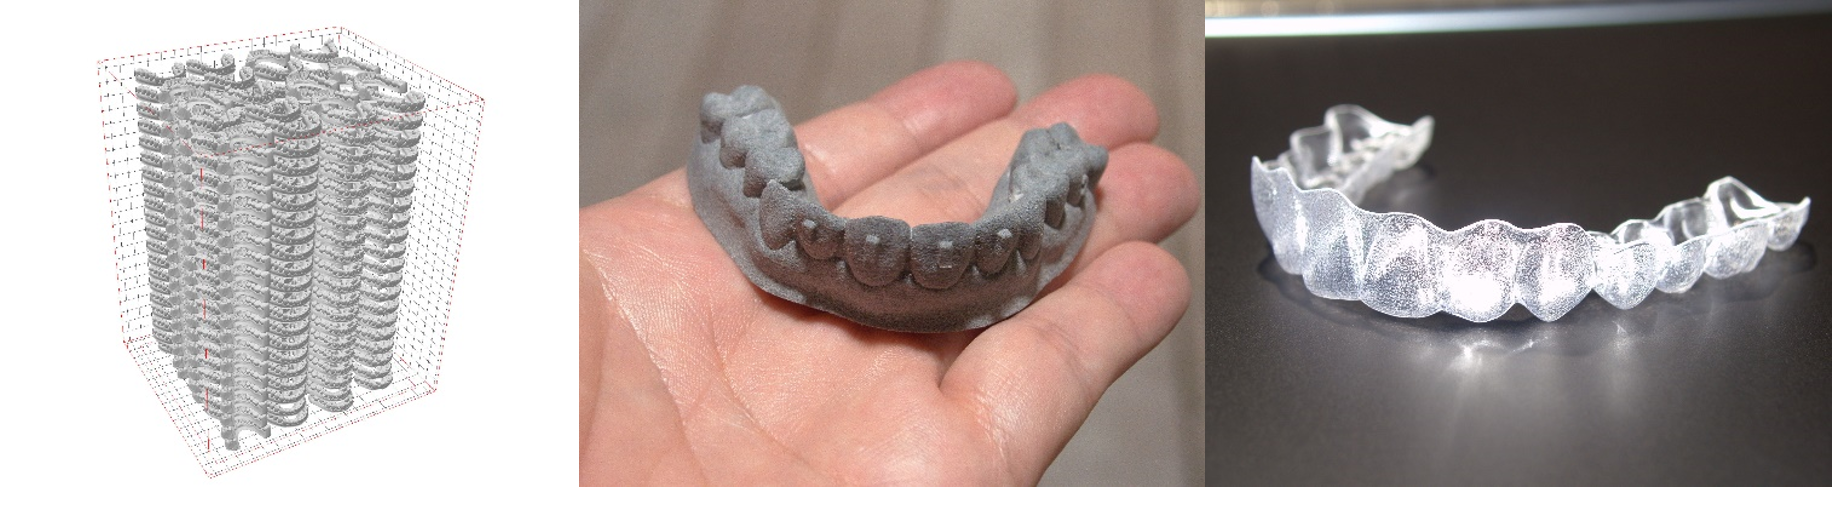 ヤマト運輸株式会社、3Dプリンターを活用した国内初の歯科矯正マウスピースのオンデマンド生産・配送サービスを開始